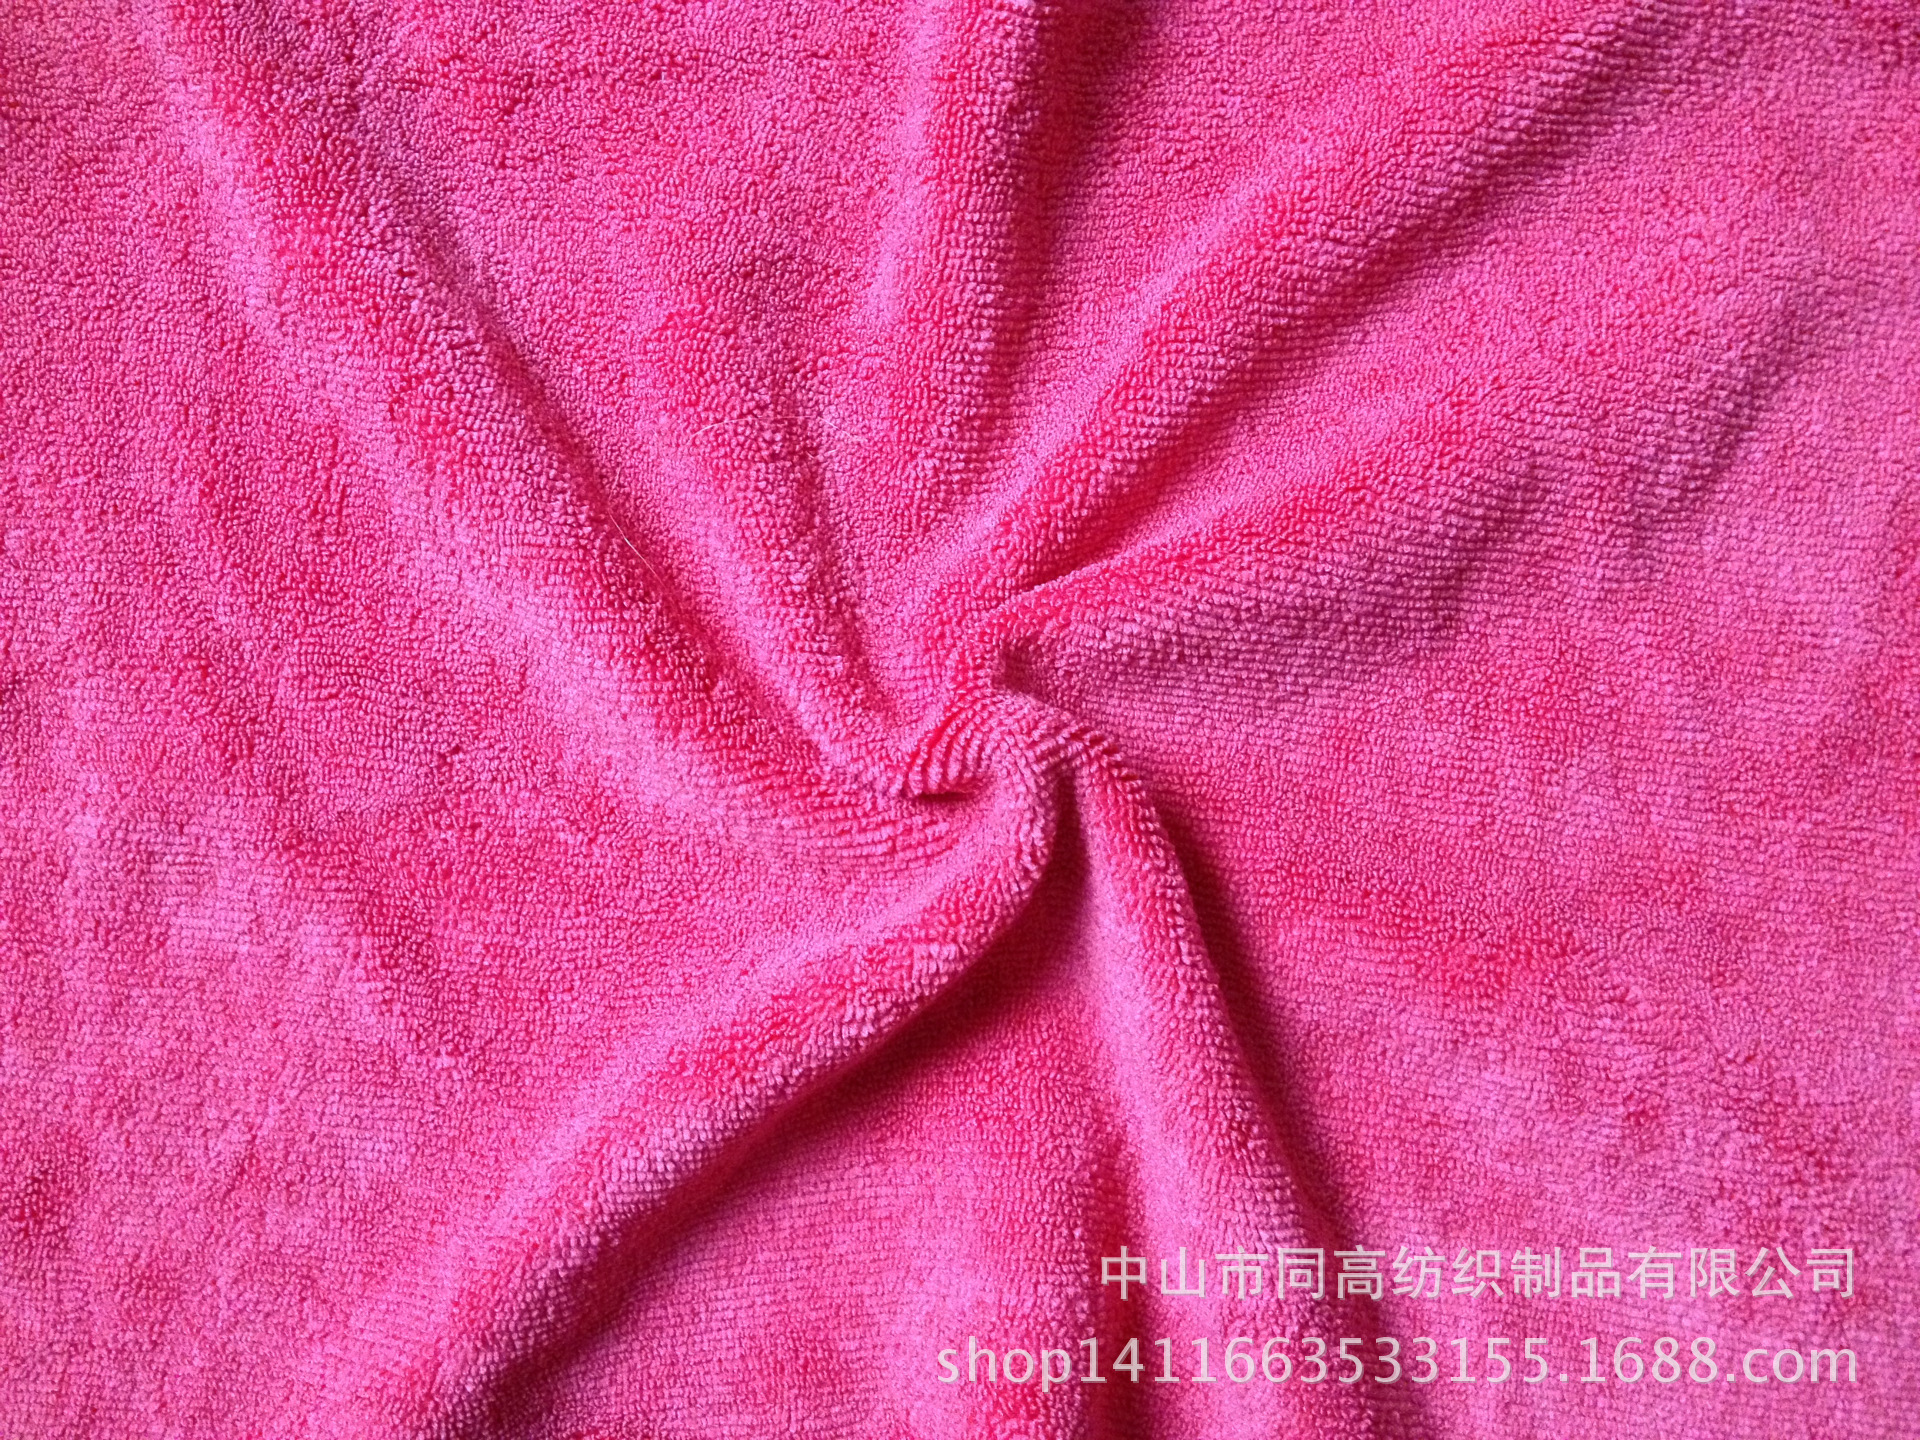 中山厂家直销超强吸水毛巾 超细纤维双面毛巾布车用清洁毛巾布料